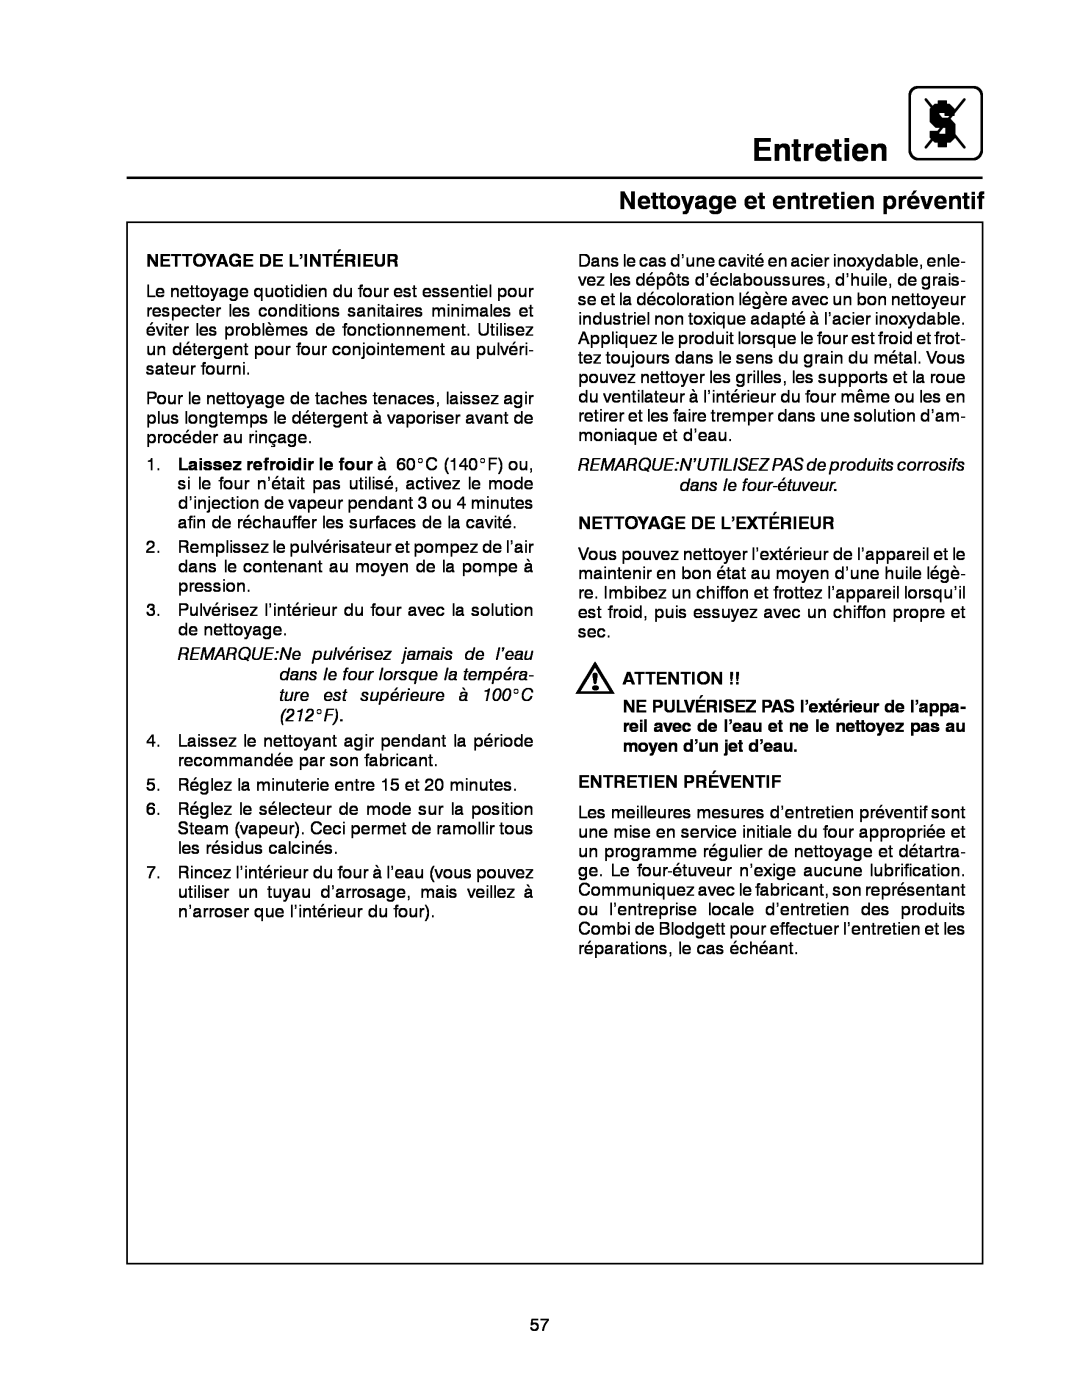 Blodgett BC-20G manual Entretien, Nettoyage et entretien préventif, Nettoyage De L’Intérieur, Nettoyage De L’Extérieur 